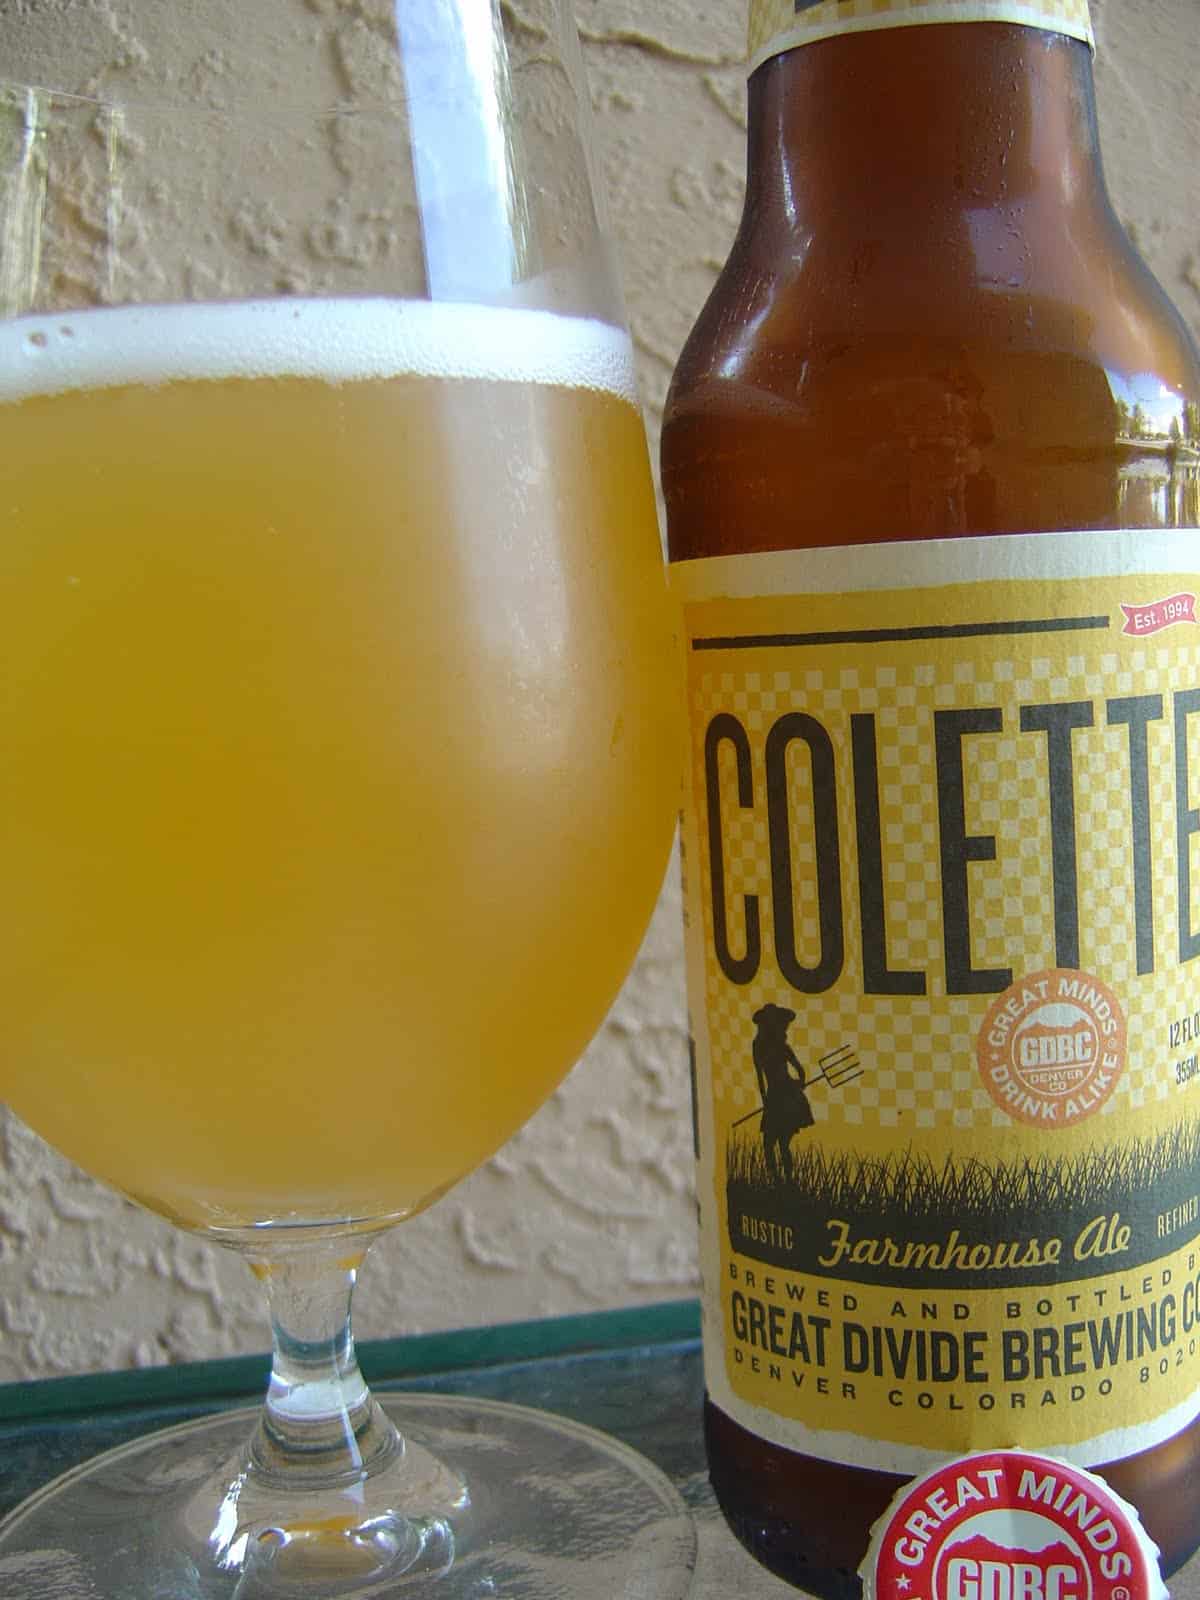 Great Divide Brewing Company, Colorado – Collette Farmhouse Ale